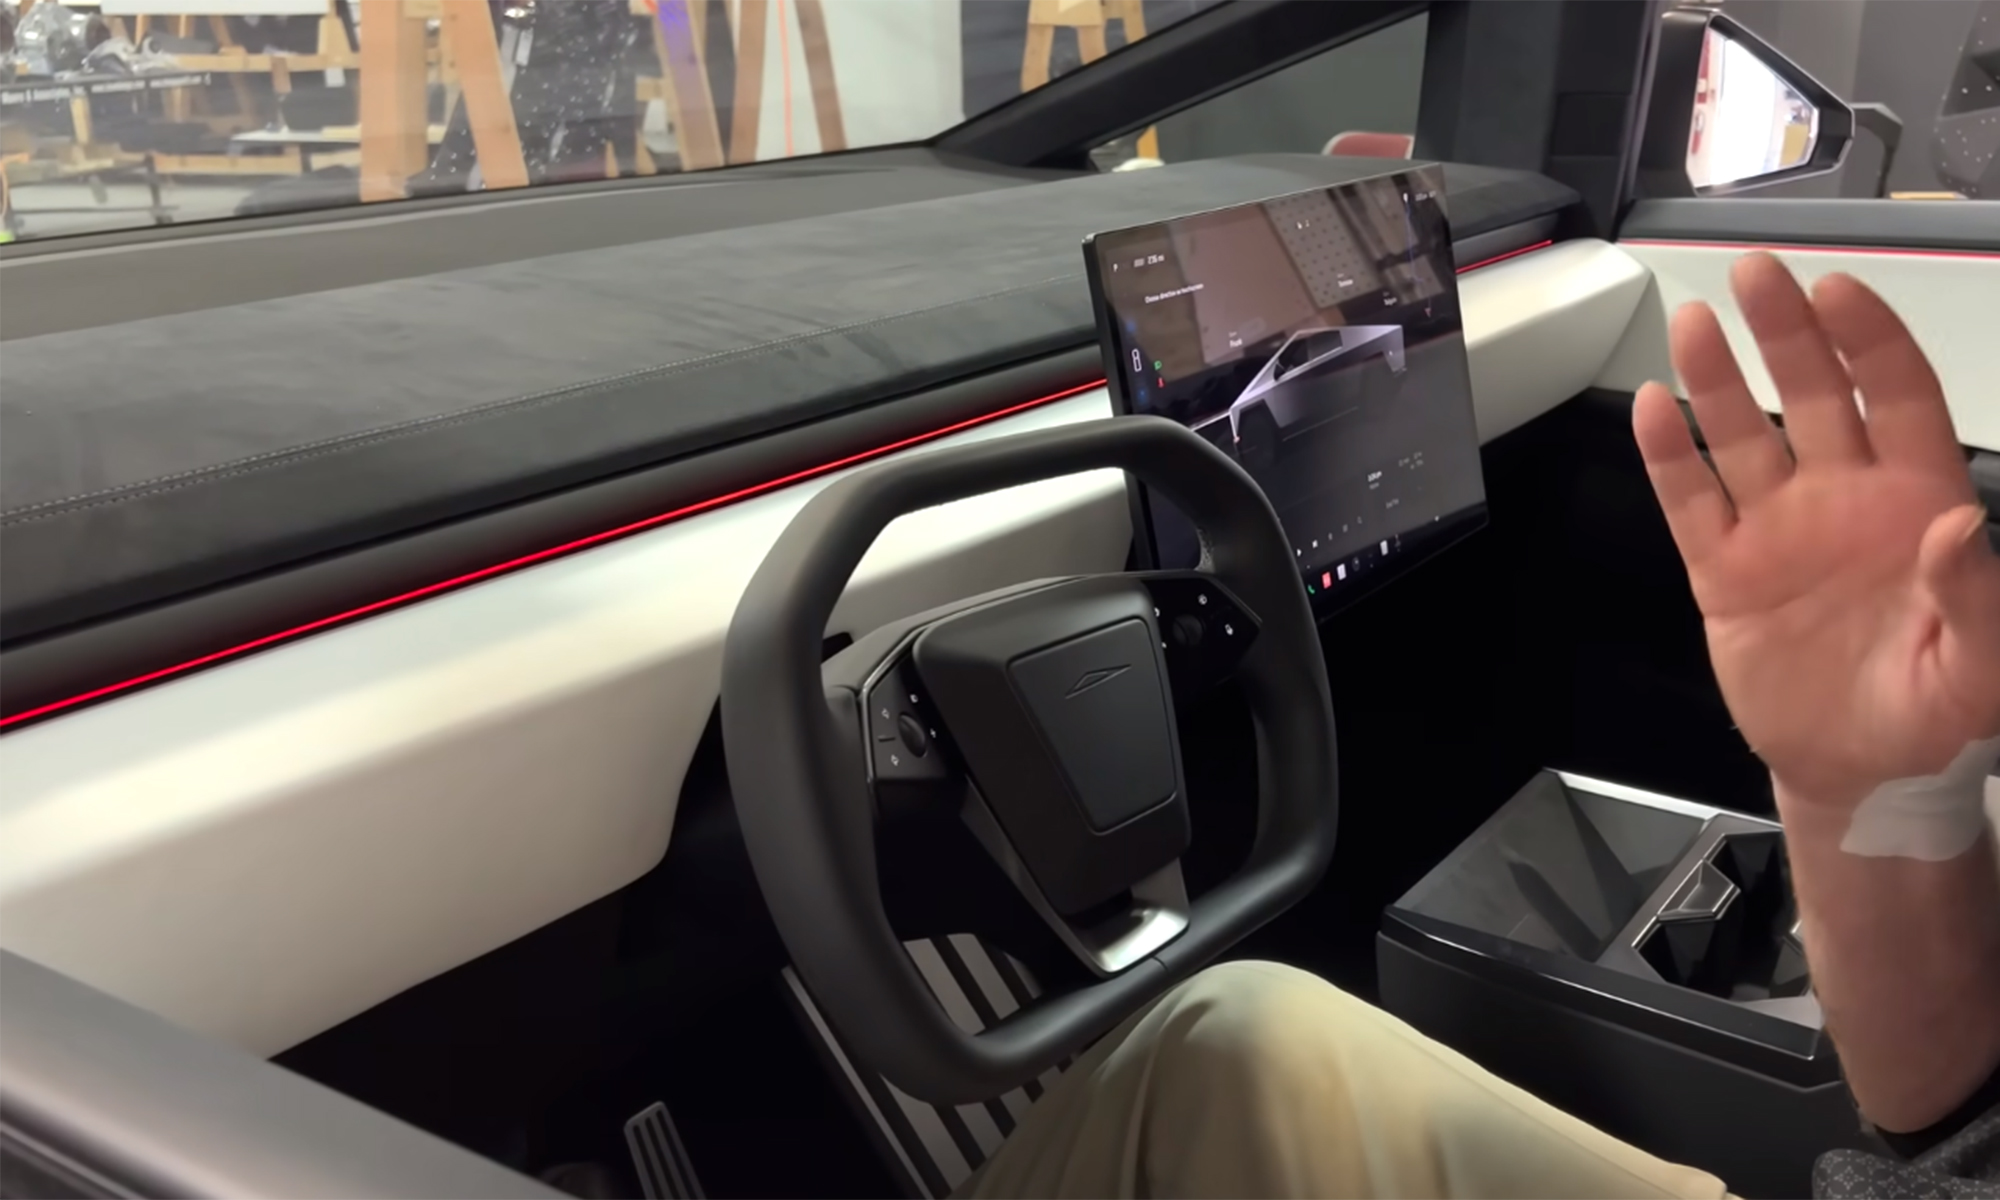 Salen a la luz algunos detalles interesantes del vehículo de Elon Musk.